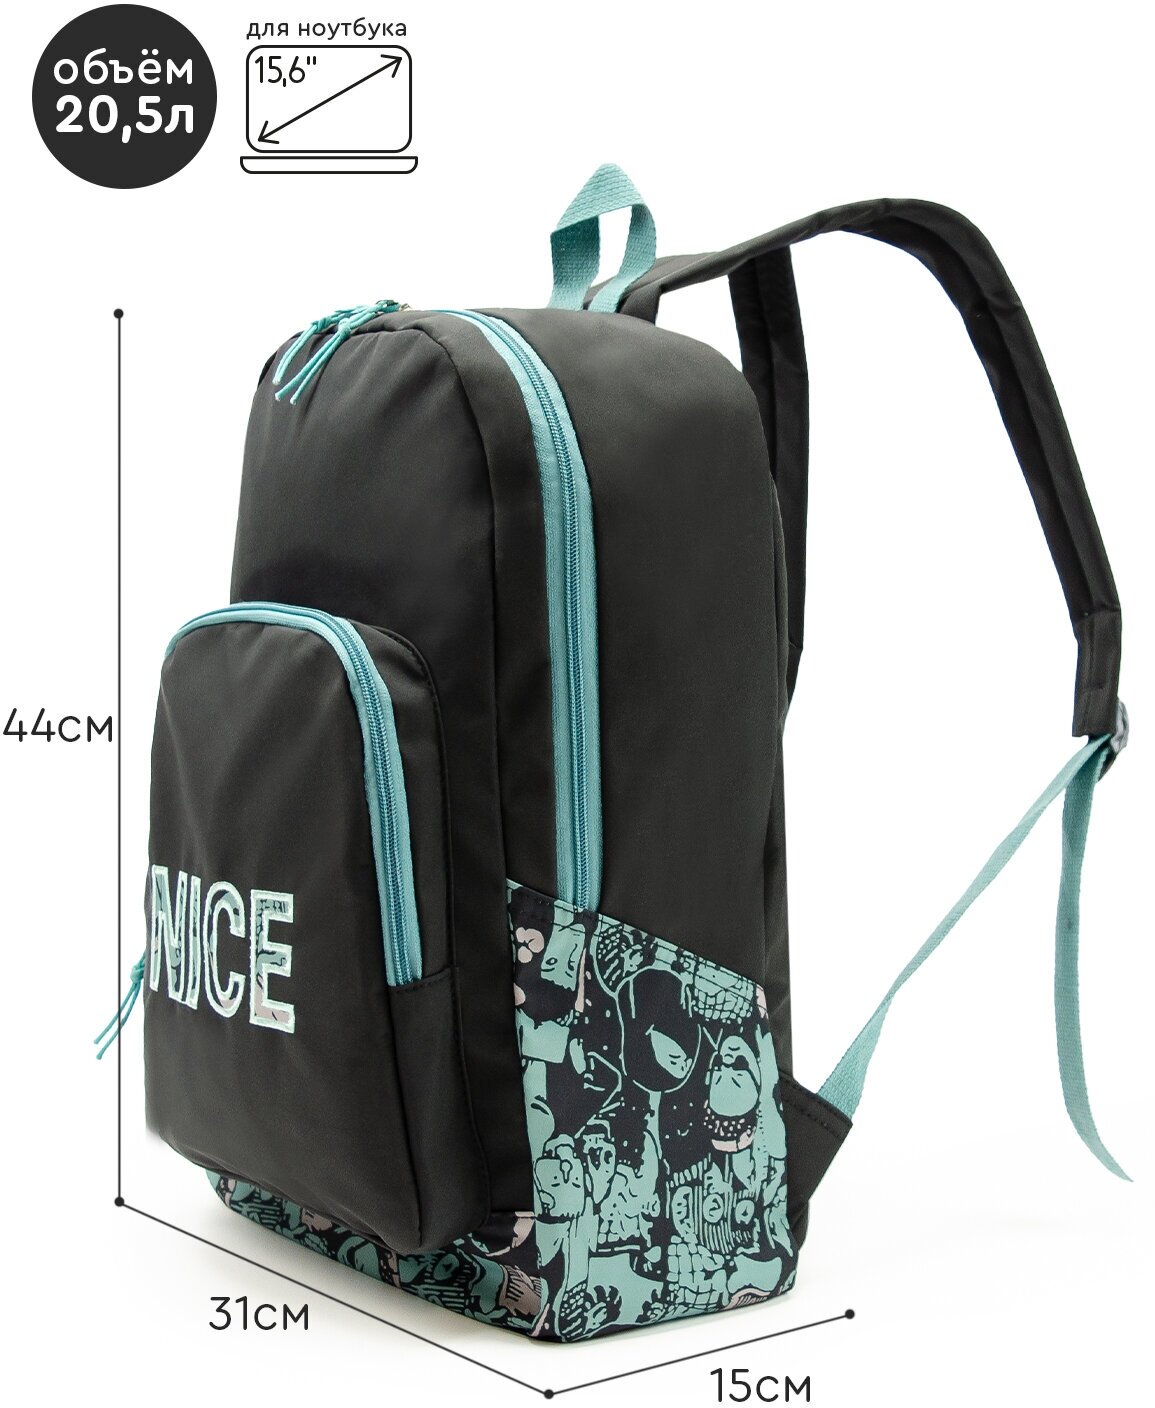 Рюкзак (черный-синий) Just for fun мужской женский городской спортивный школьный повседневный офис для ноутбука туристический походный сумка ранец